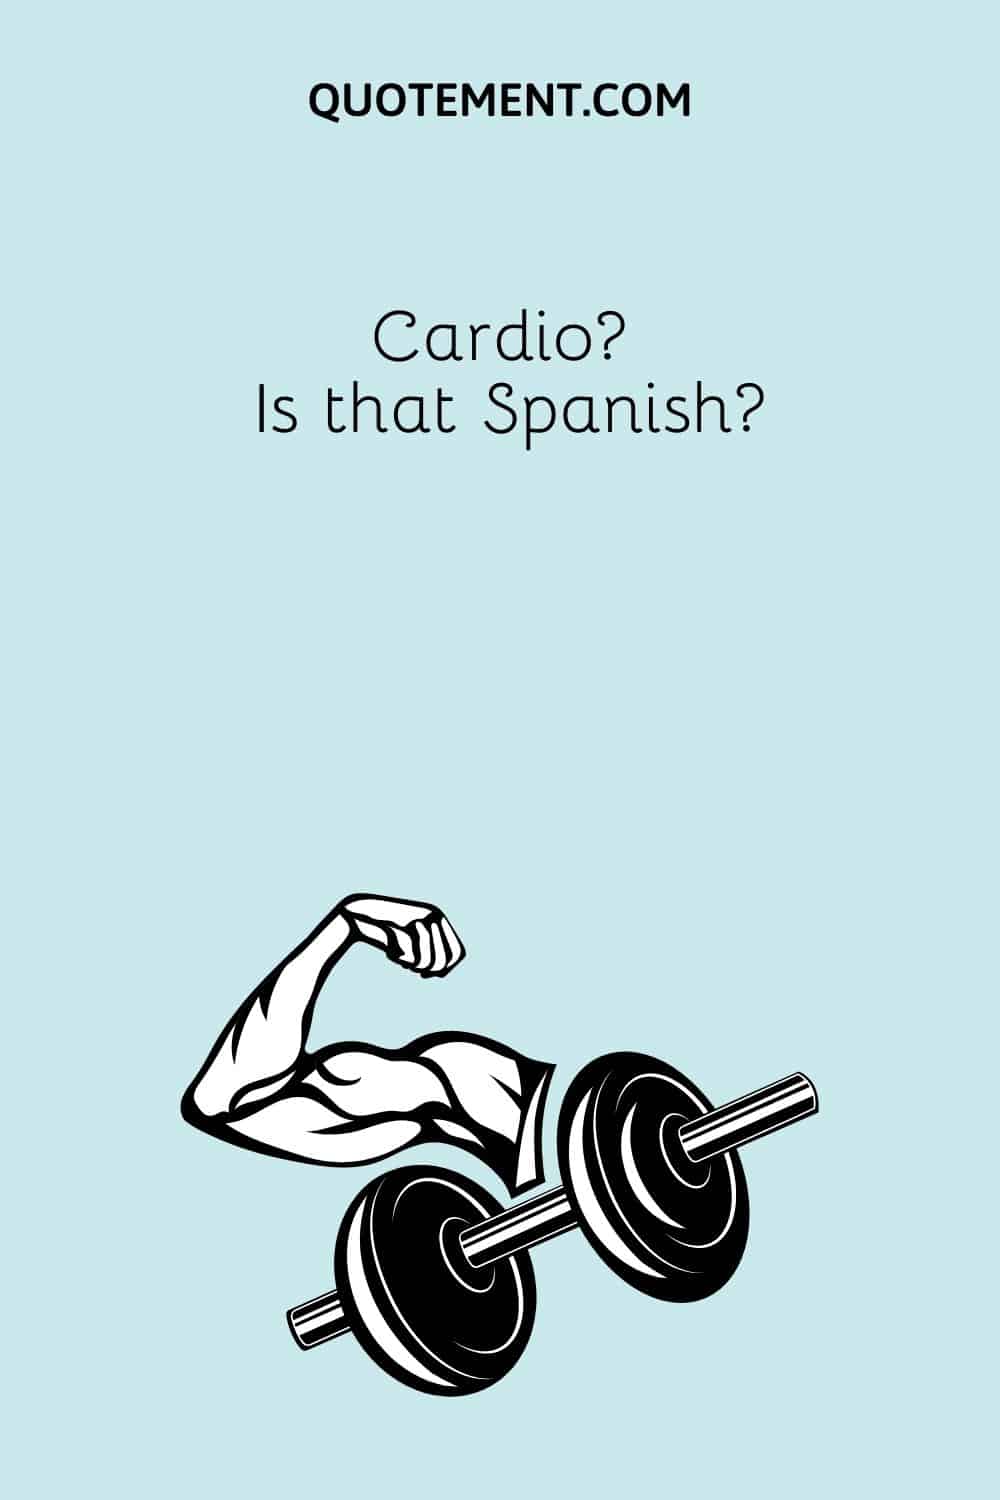 Cardio Is that Spanish